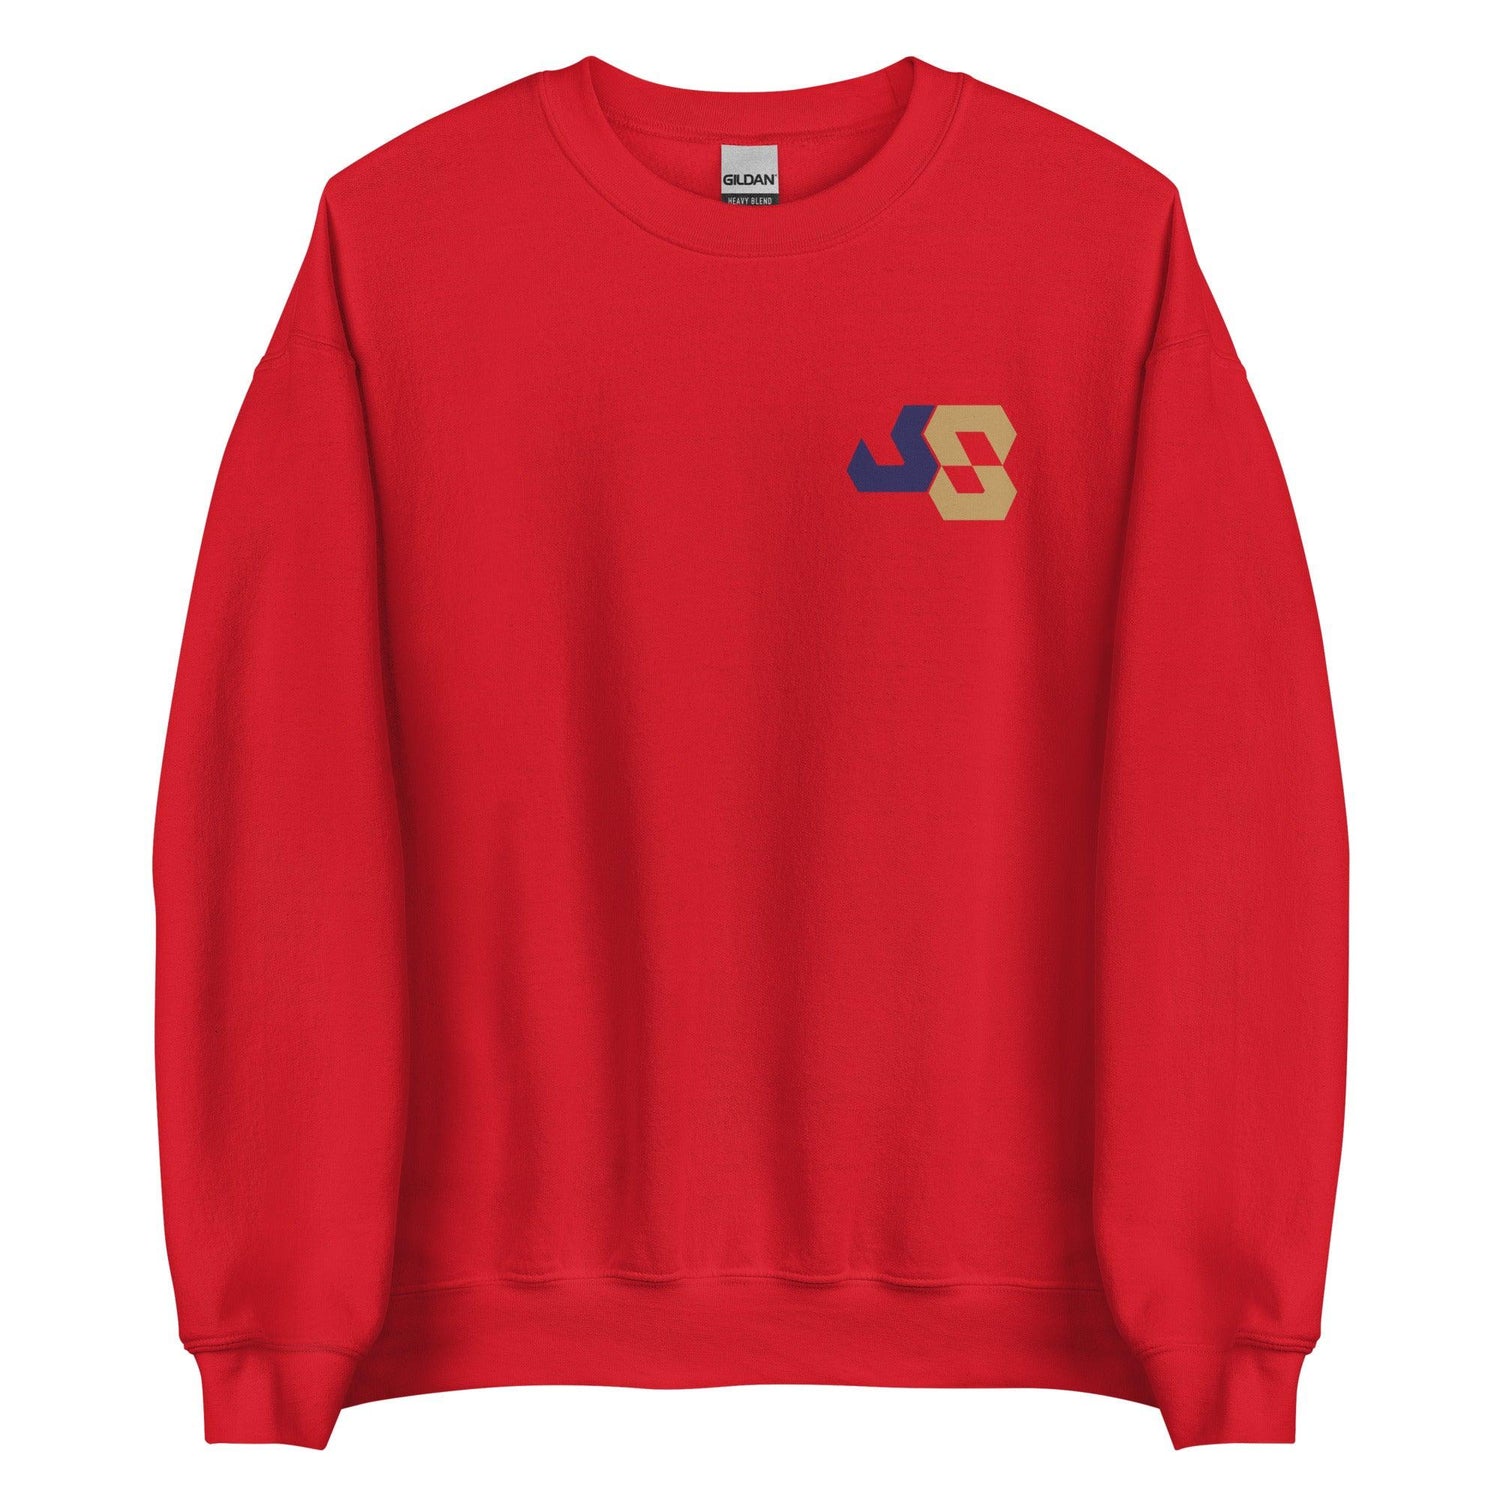 Josiah Silver “JS8” Sweatshirt - Fan Arch